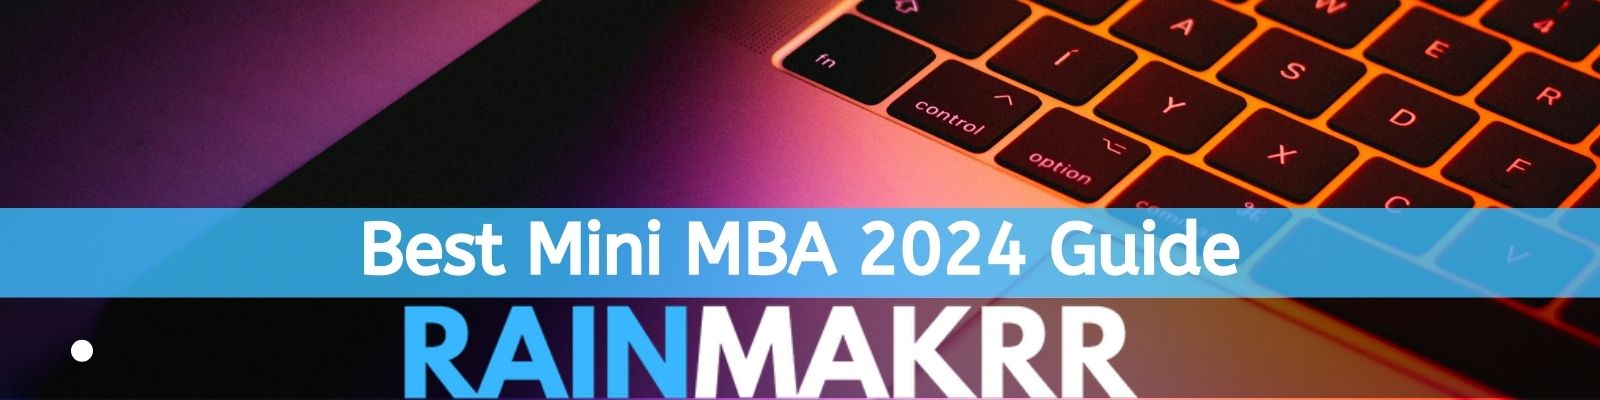 Best Mini MBA Guide DT best mini mba uk top mini mba courses uk